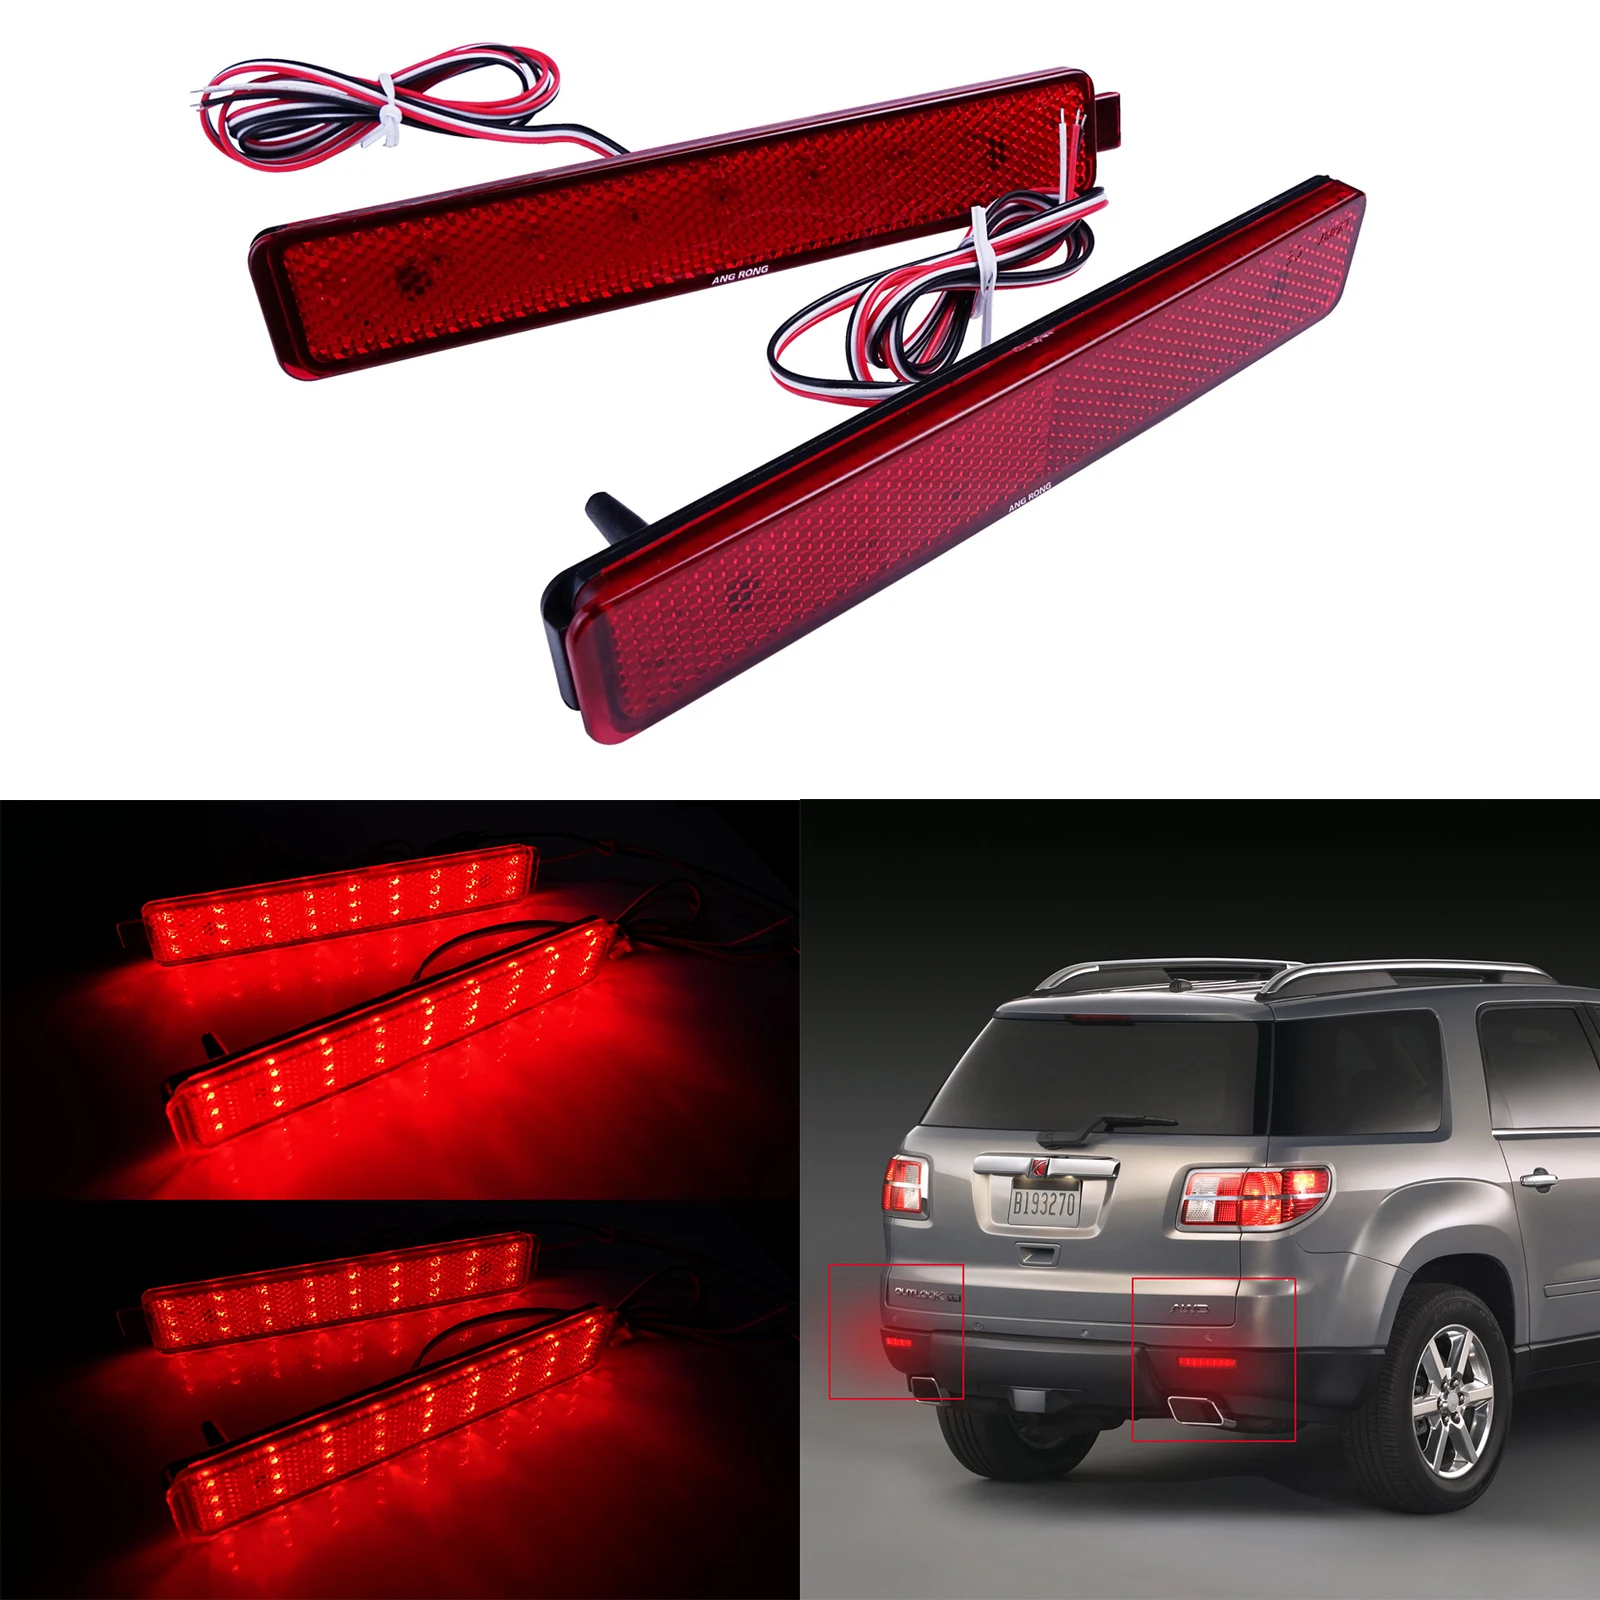 

ANGRONG 2X красный светодиодный бампер отражатель задний стоп-сигнал подходит для Pontiac Sunfire Buick анклава